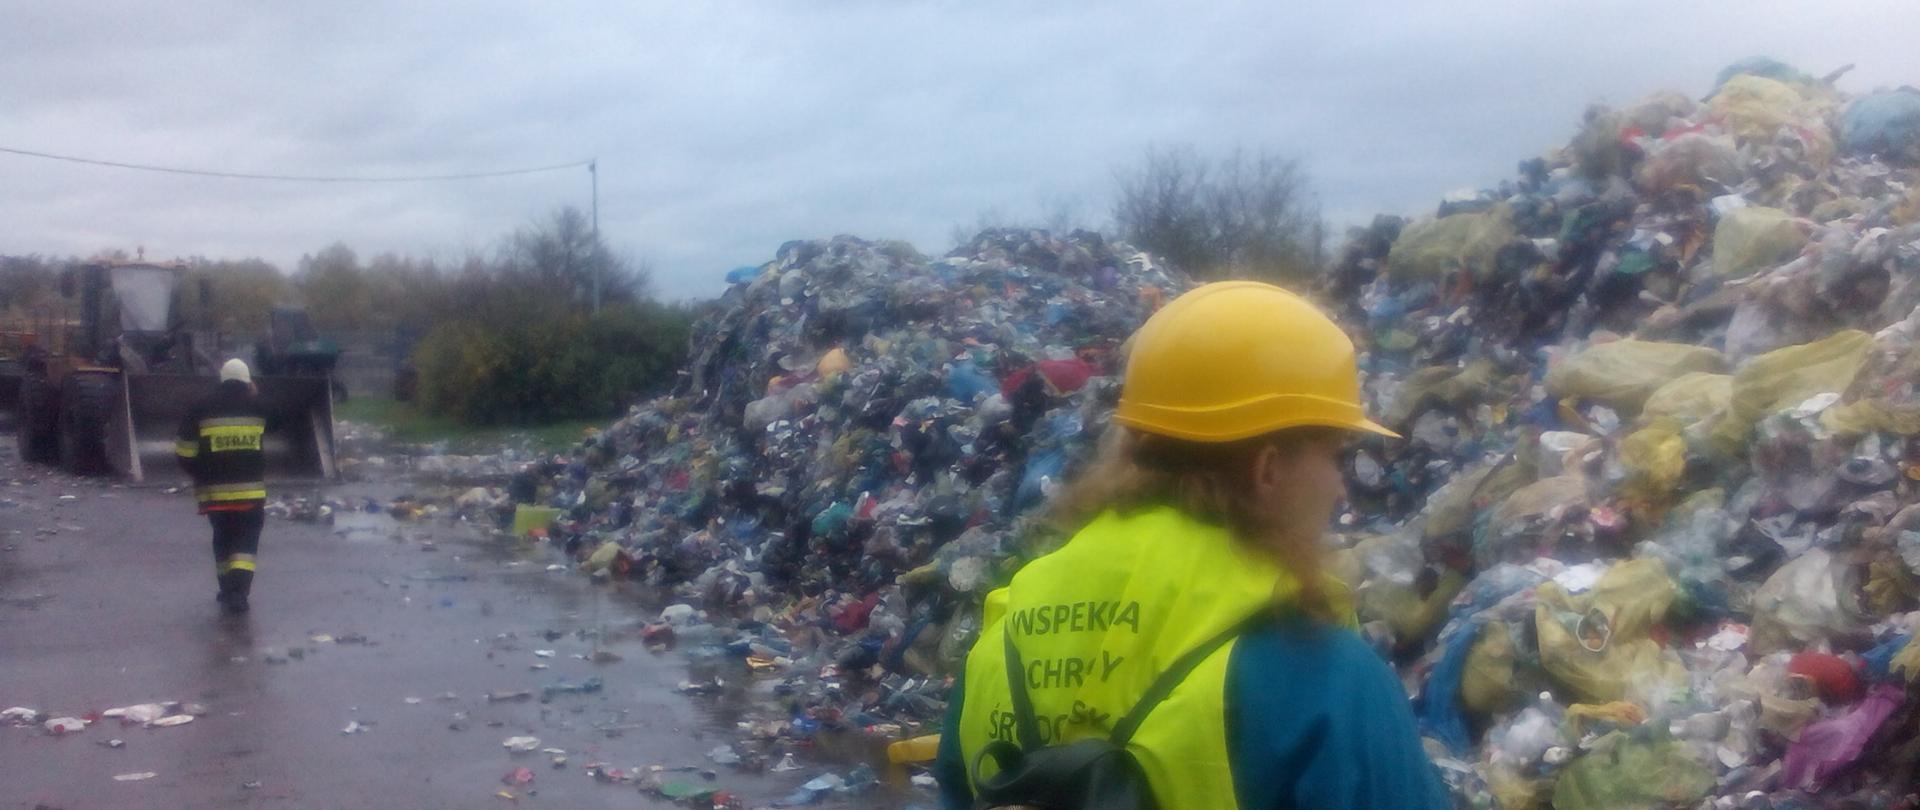 Inspektor Wojewódzkiego Inspektoratu Ochrony Środowiska w Warszawie prowadzi oględziny miejsca wywiezionych z hali odpadów, dogaszonych przez straż.